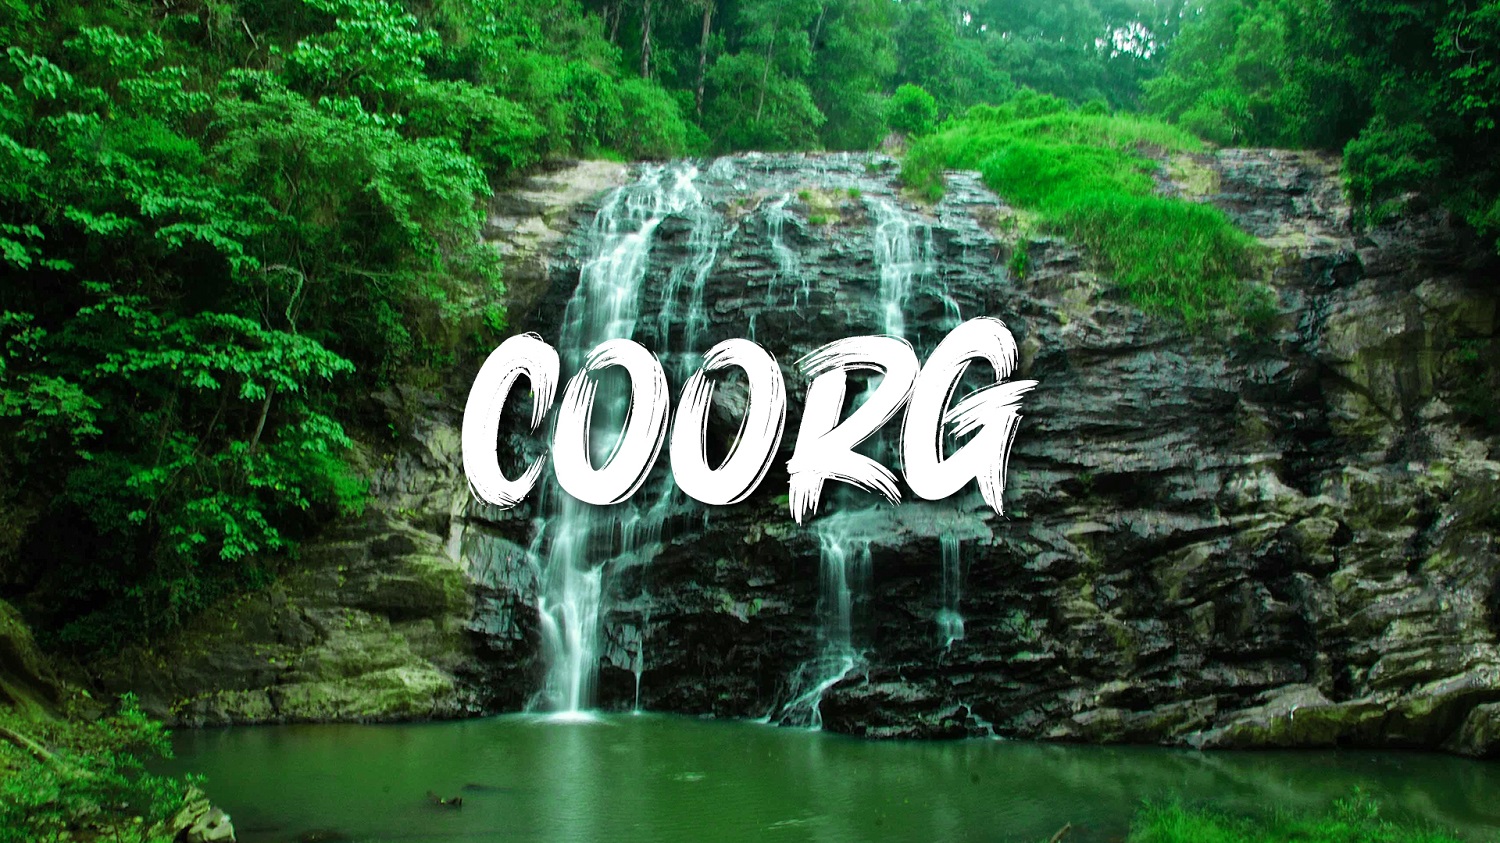 Coorg 1N 2D